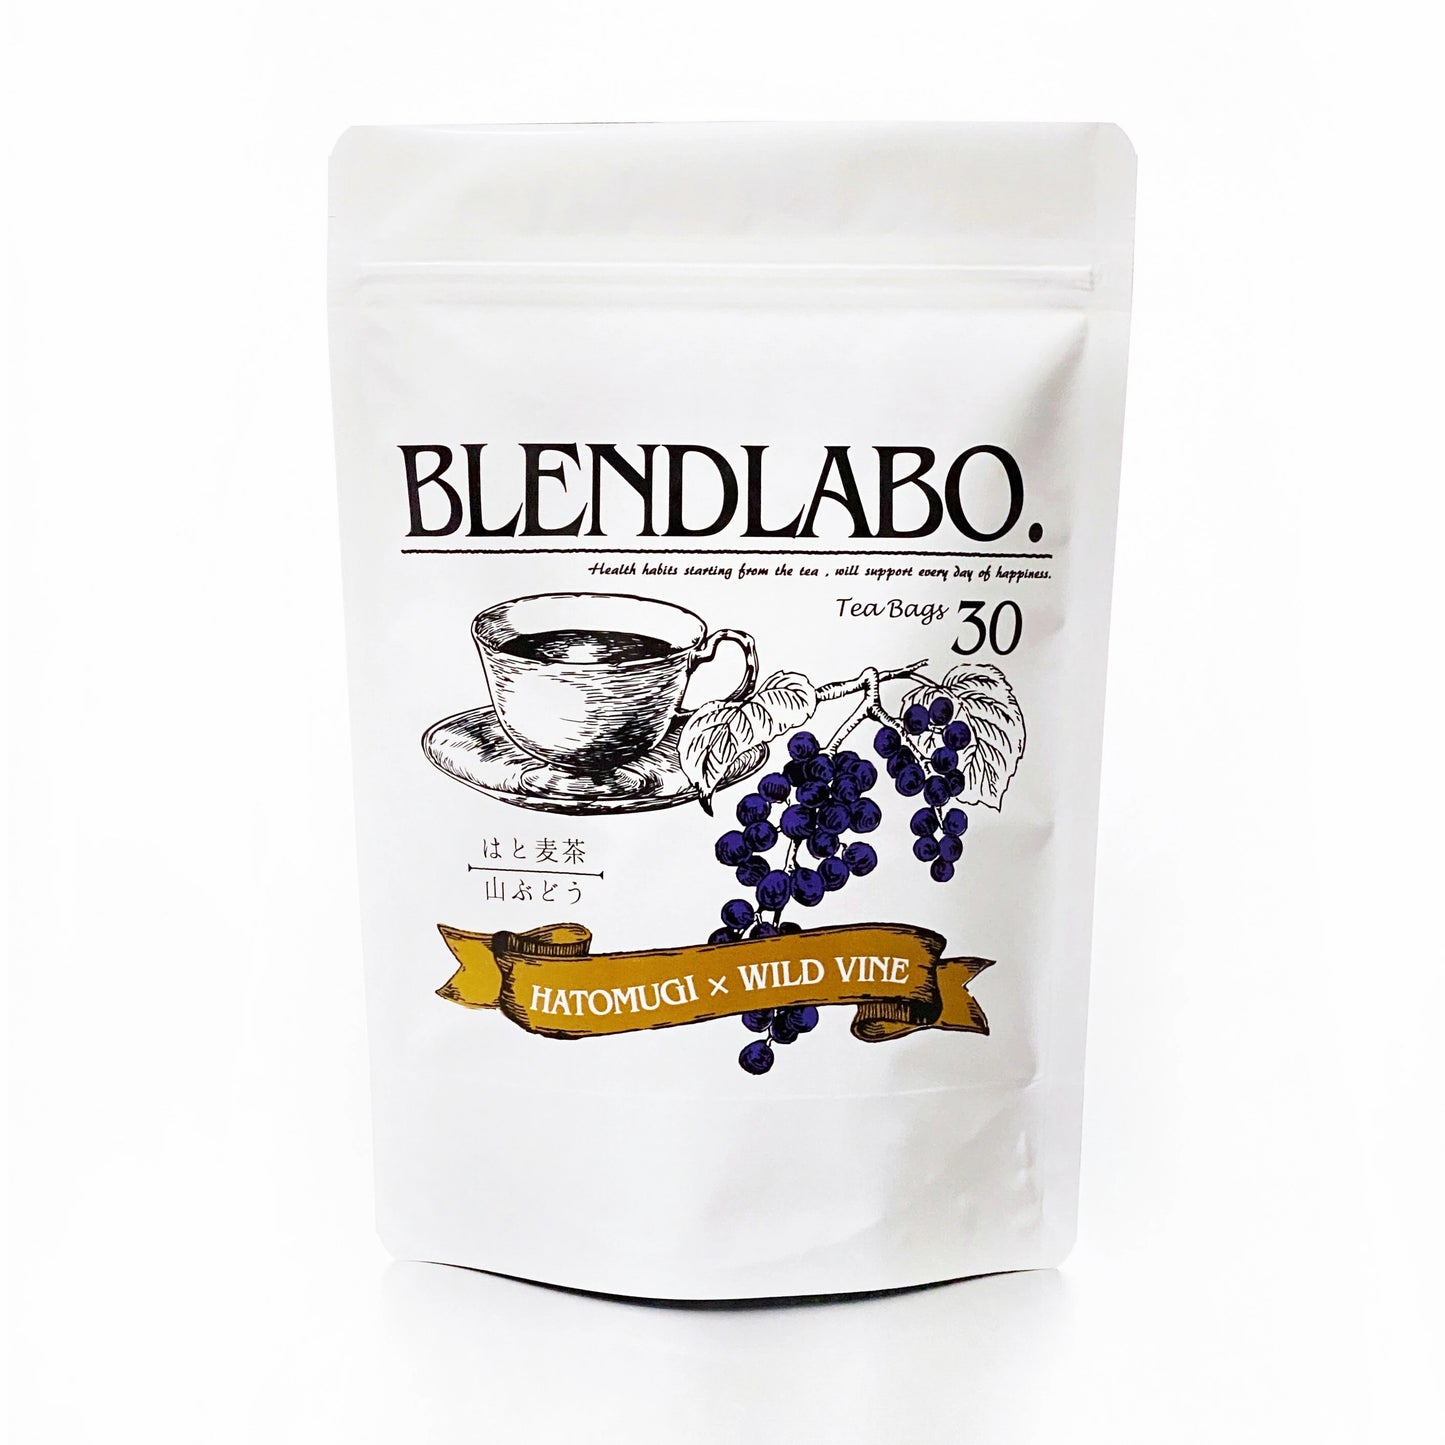 フレーバーティー はと麦茶 山ぶどう ハト麦茶  ノンカフェイン 健康茶 国産 ティーバッグ 30包 ふくちゃ ハトムギ ブドウ 葡萄 Blend LABO. ふくちゃ